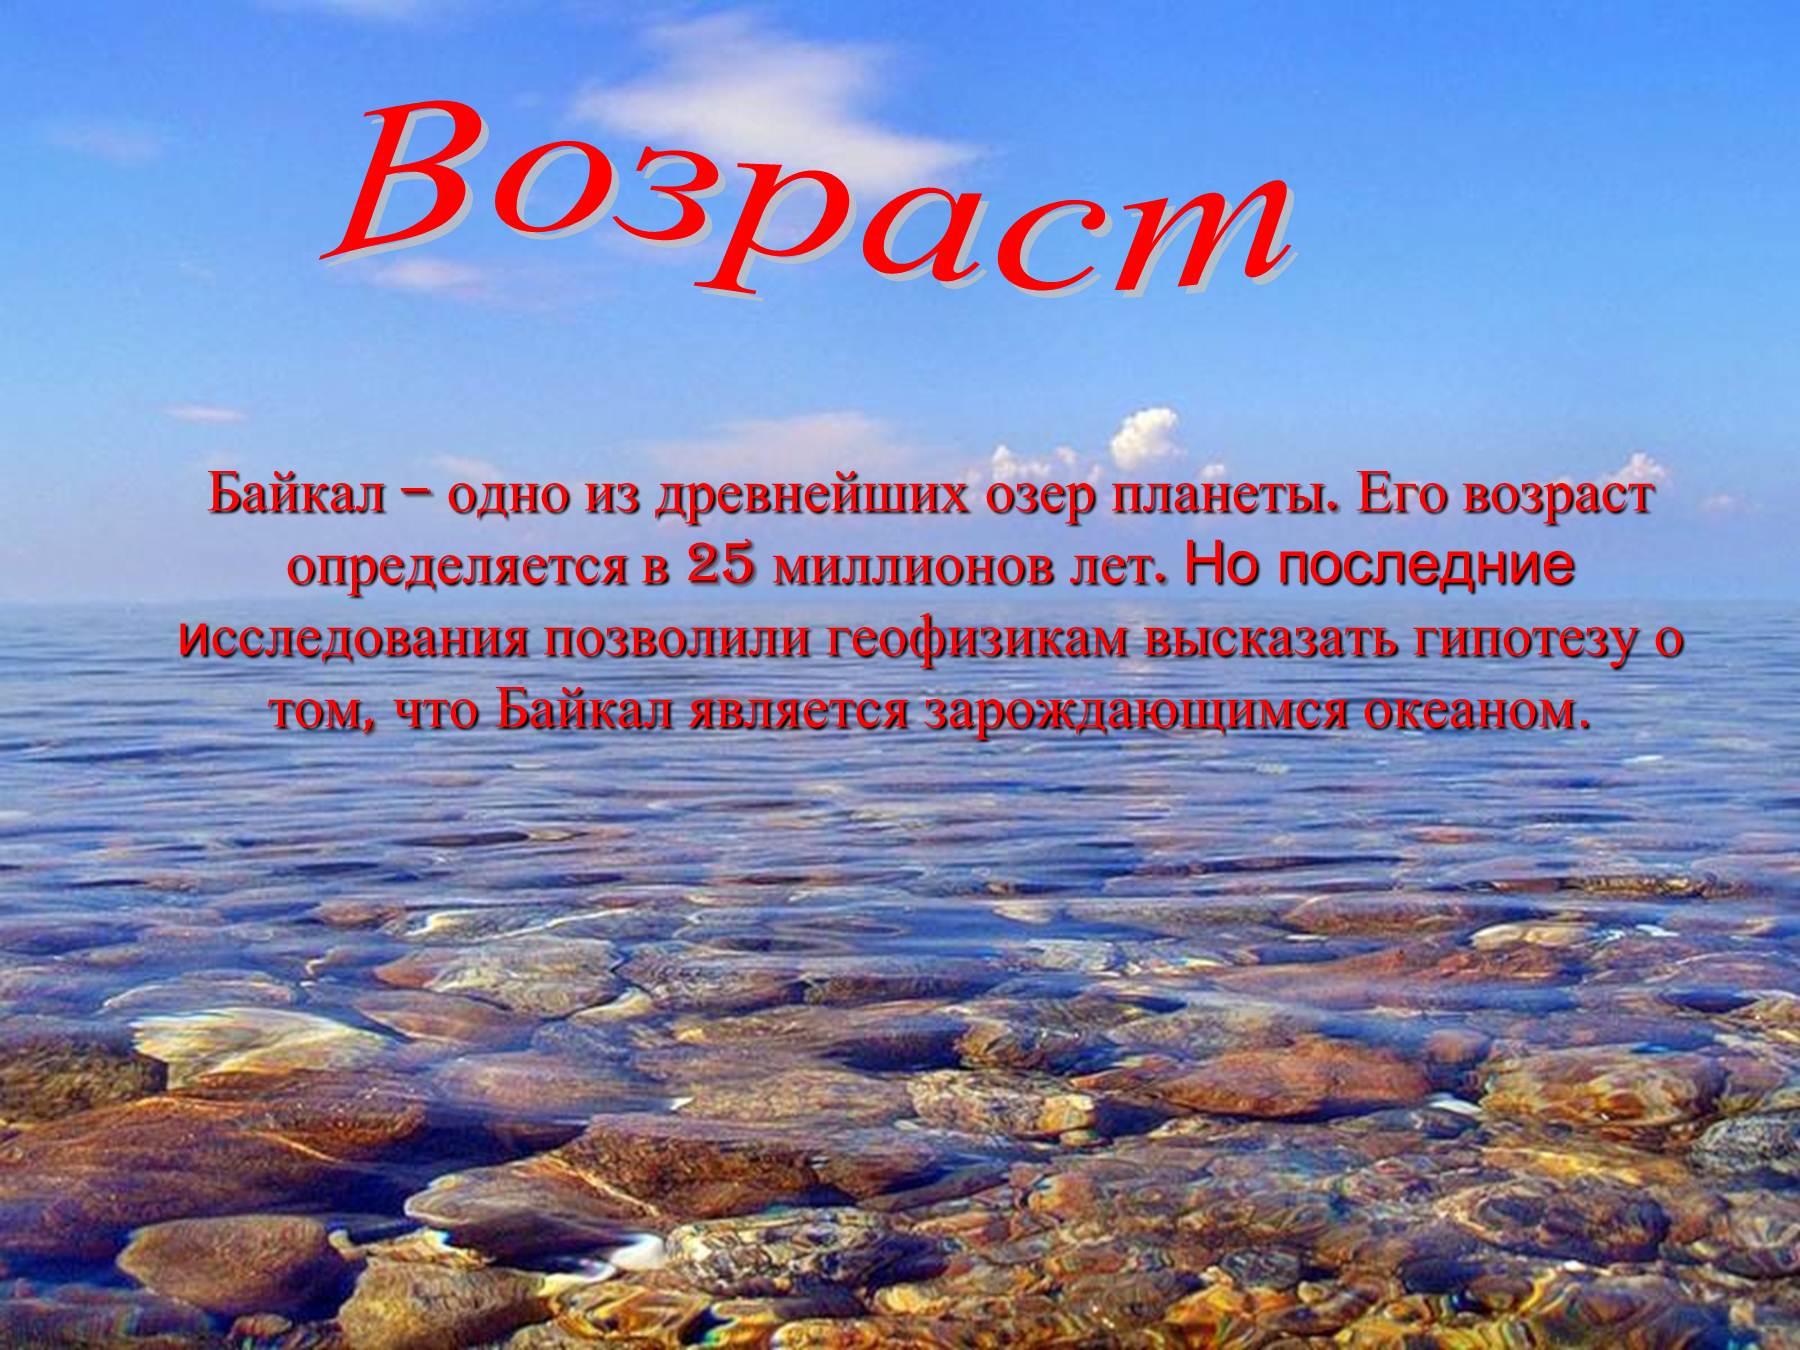 Воды байкала чисты и прозрачны. Озеро Байкал вода. Имидж Байкал Горячинск. Байкал пресная вода. Озеро Байкал Байкальская вода.